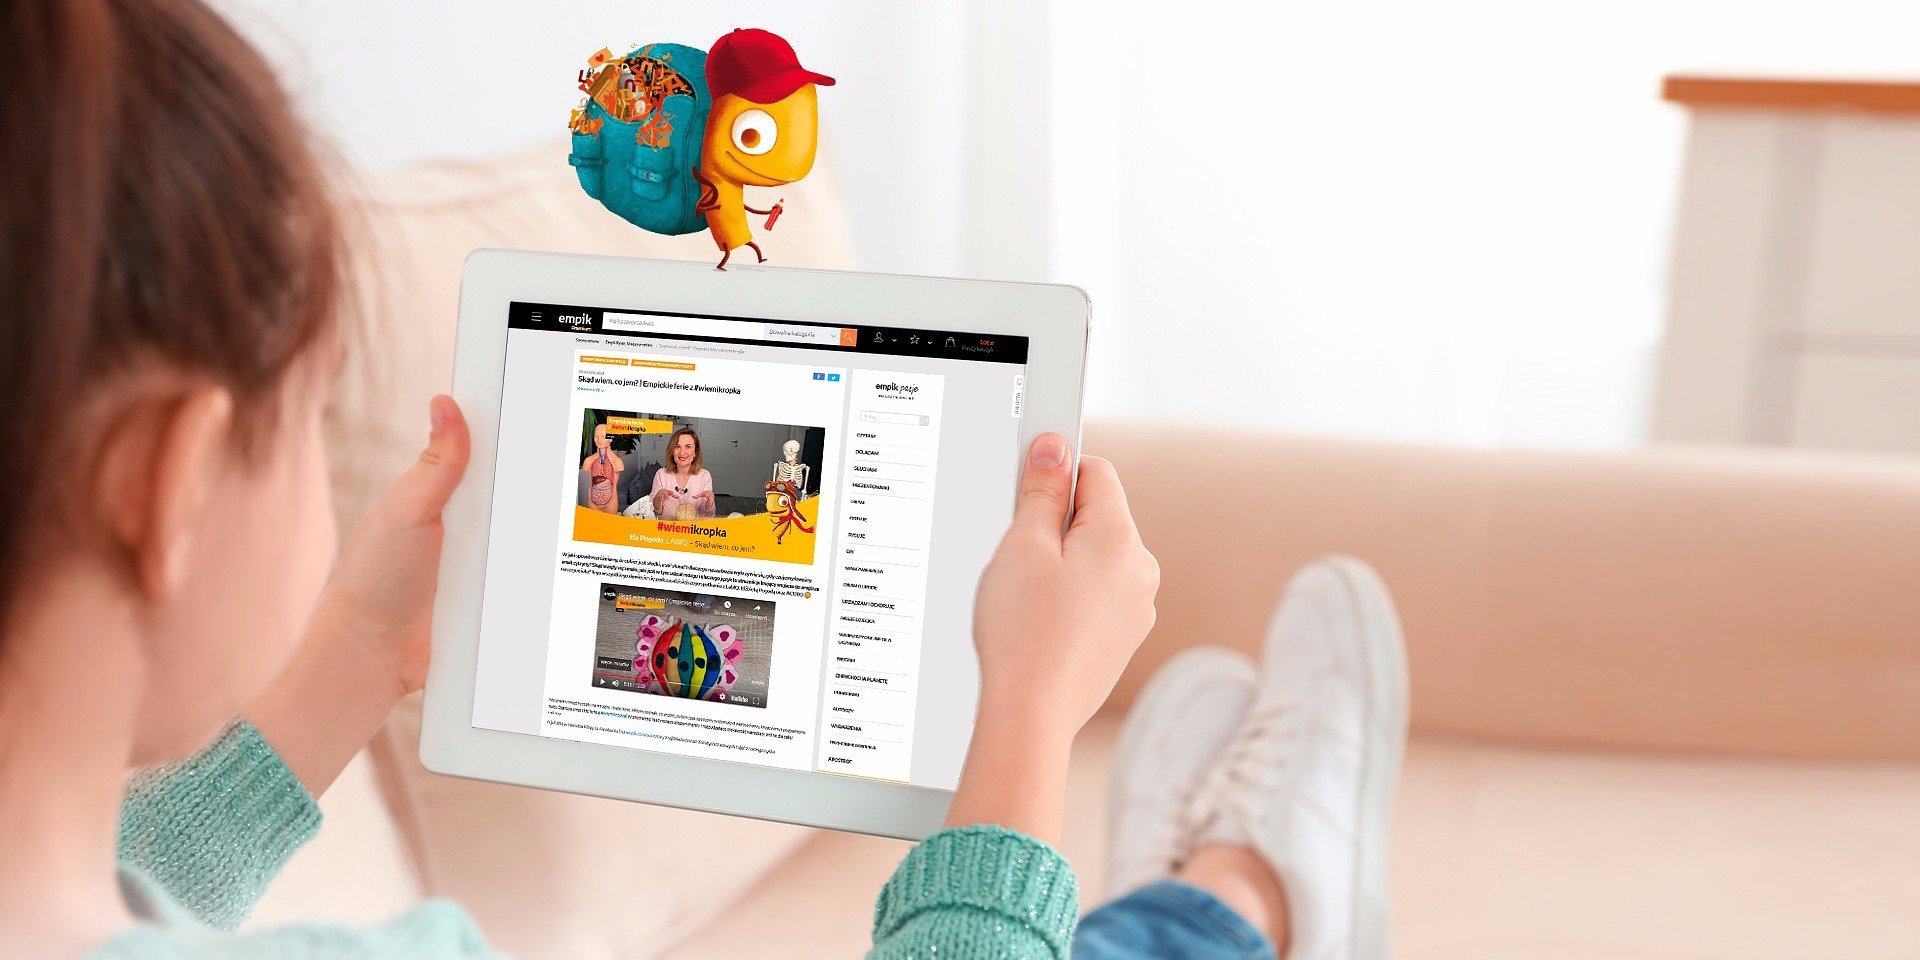 Rusza kolejny cykl warsztatów online dla dzieci wiemikropka